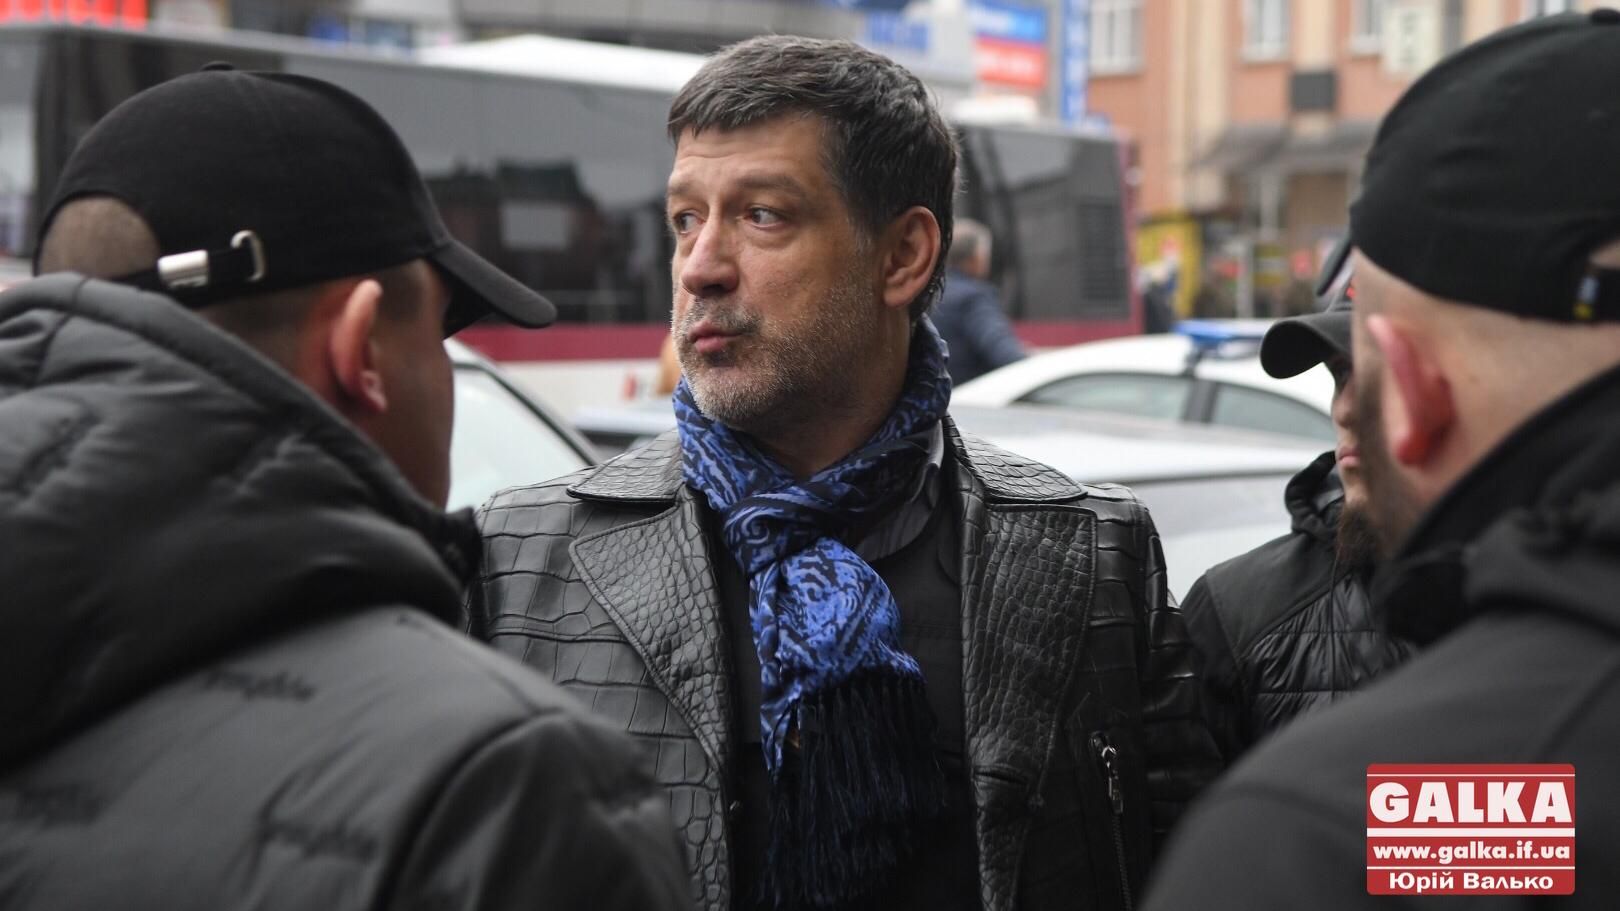 Бывшего депутата и предпринимателя облили фекалиями во Франковске: видео